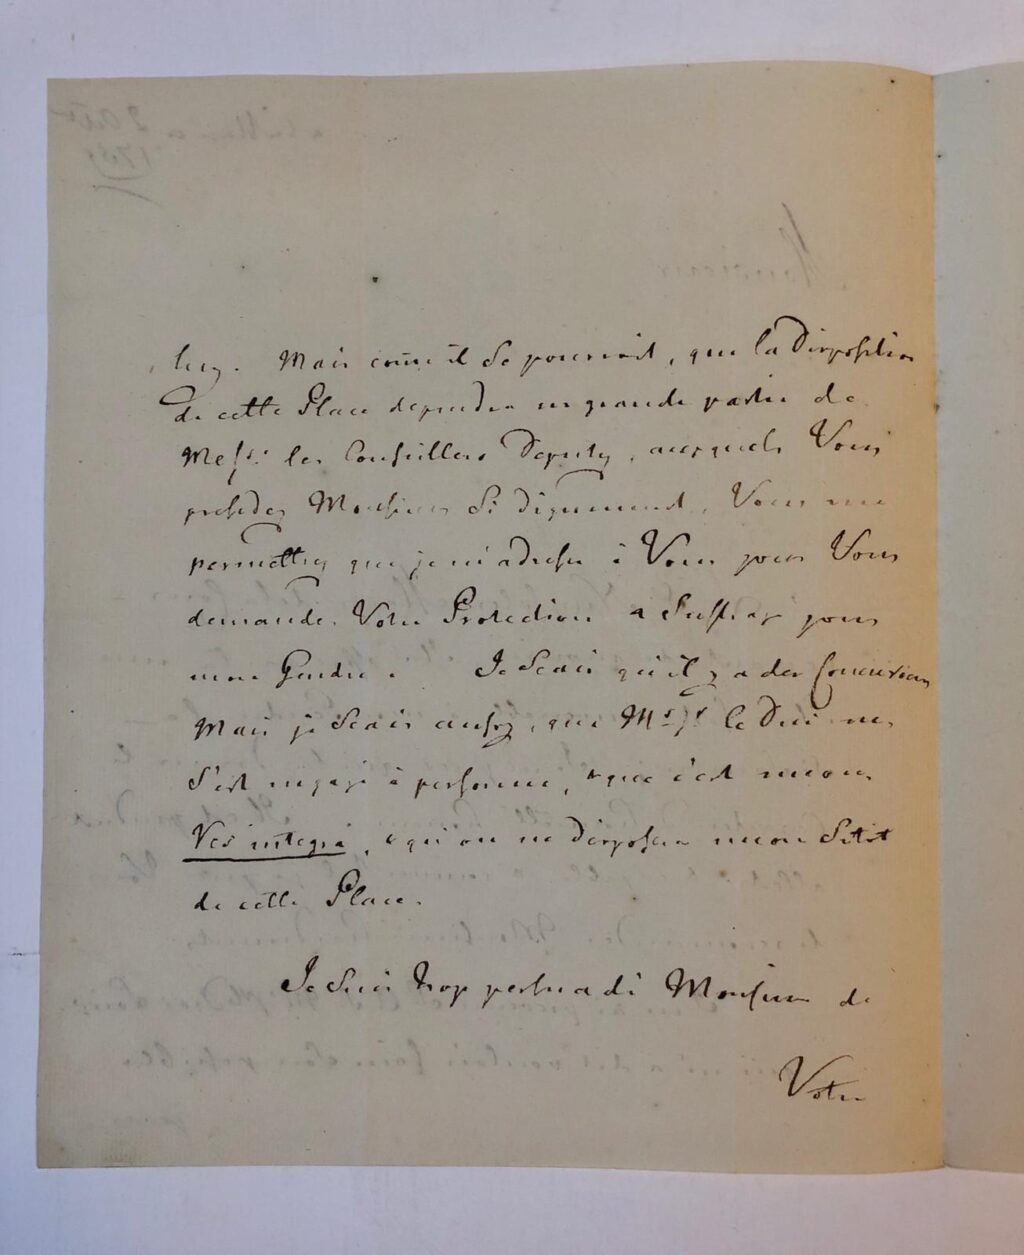 [Manuscript] LAURENZ, NUYSOLE, SAURIN Brief in het Frans van Laurenz, La Haye 2 oktober 1759, over `S. Nuysole, major de la Cour', die gaat sterven, en over zijn plaats aan het hof. De naam van Saurin valt in dit verband. 4o, 3 p.